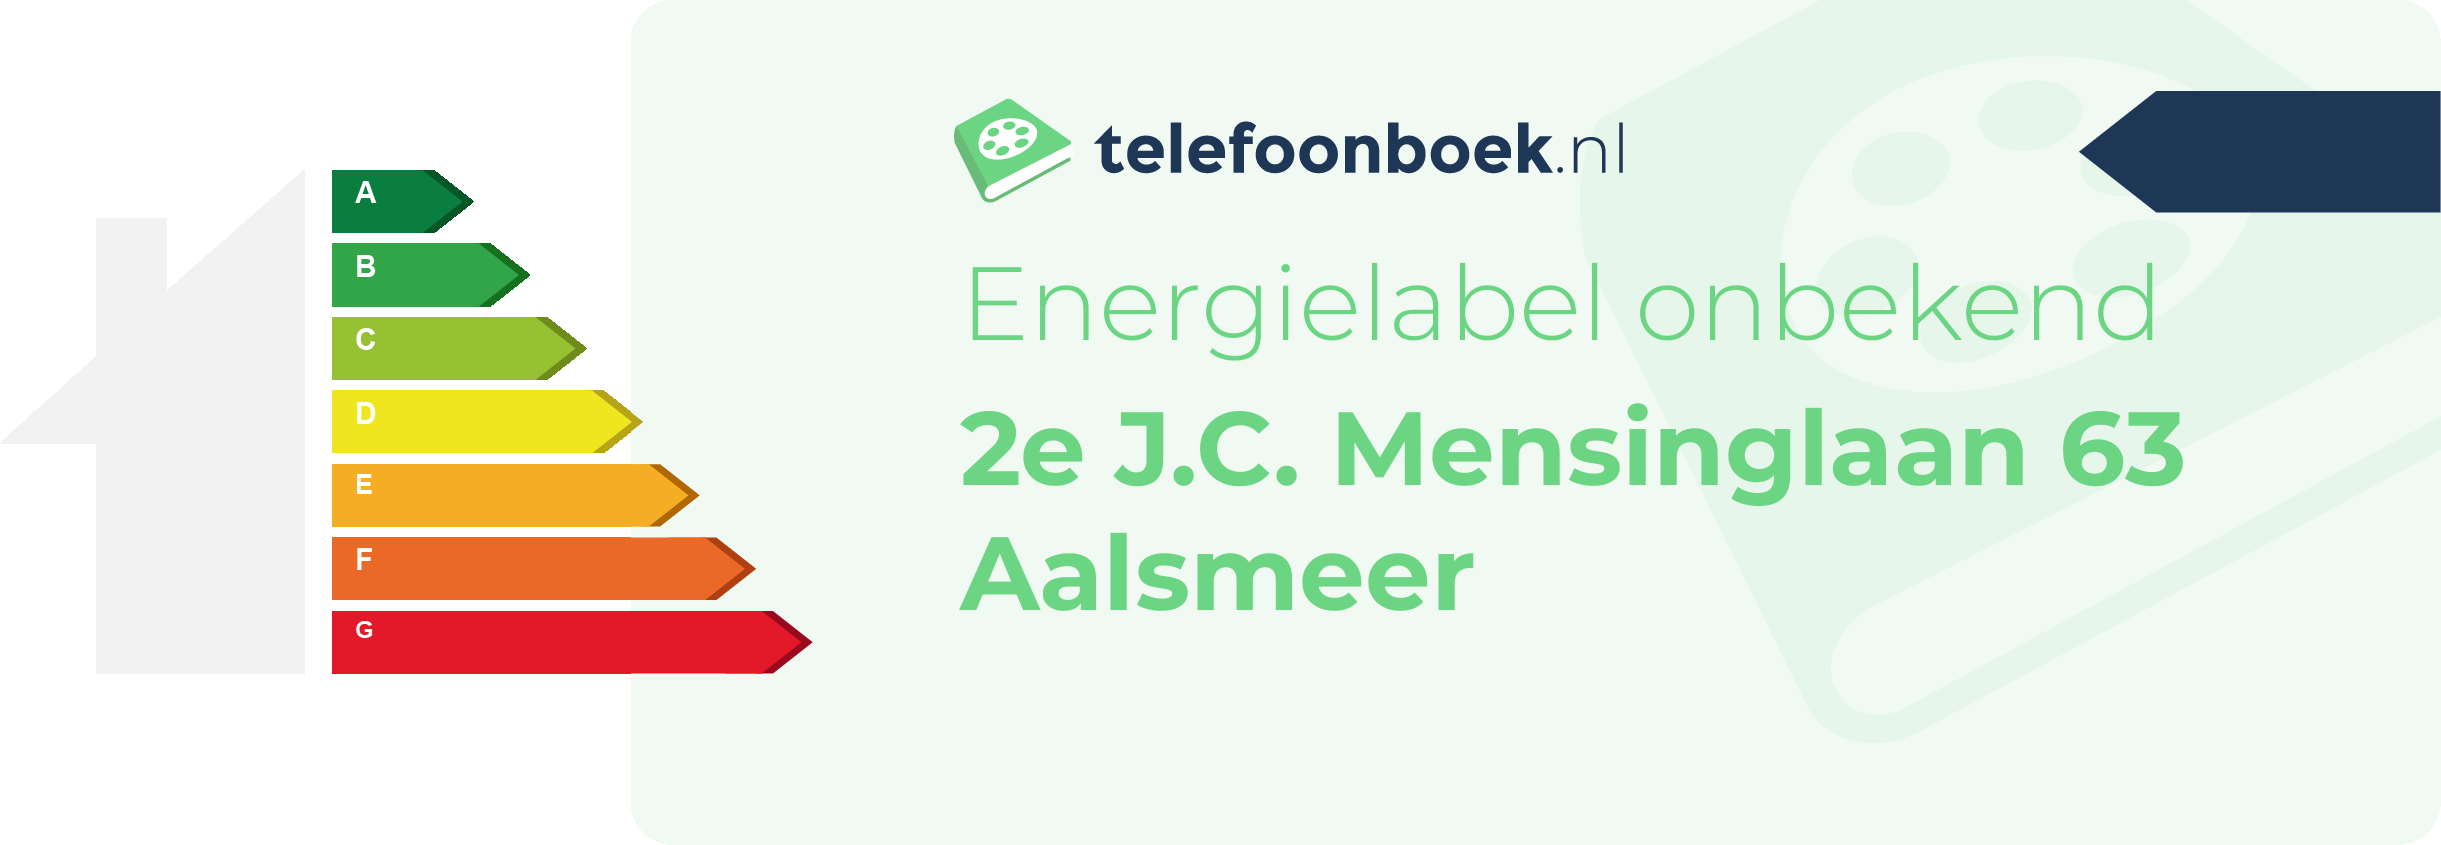 Energielabel 2e J.C. Mensinglaan 63 Aalsmeer